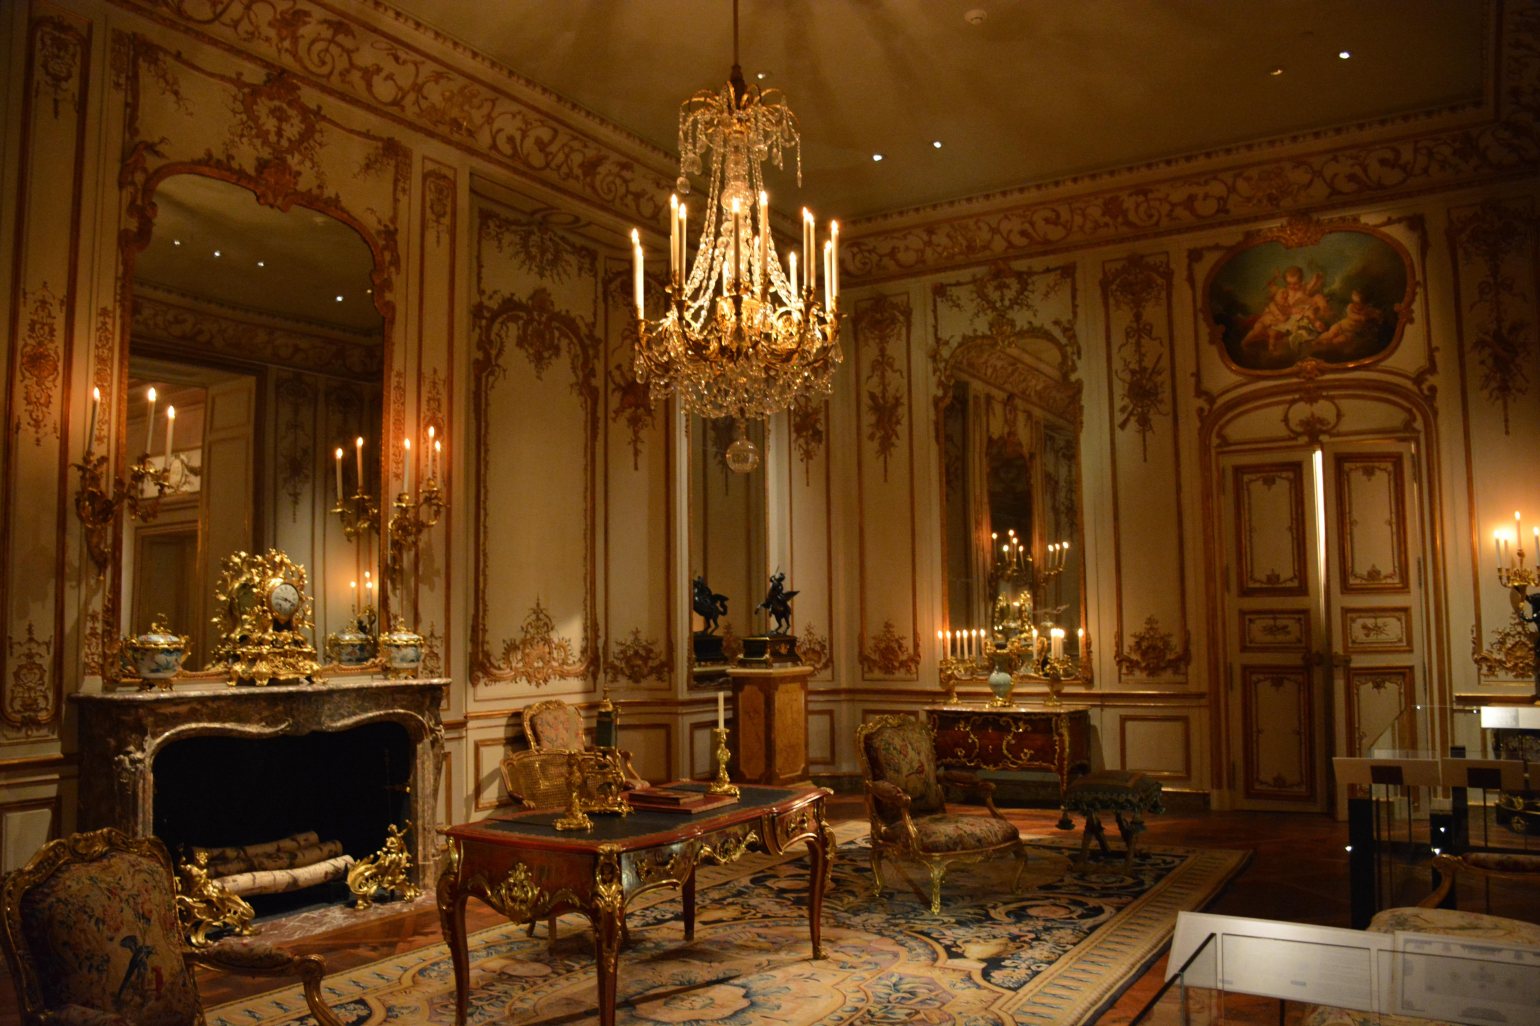 Royalcore antique room interior furniture design